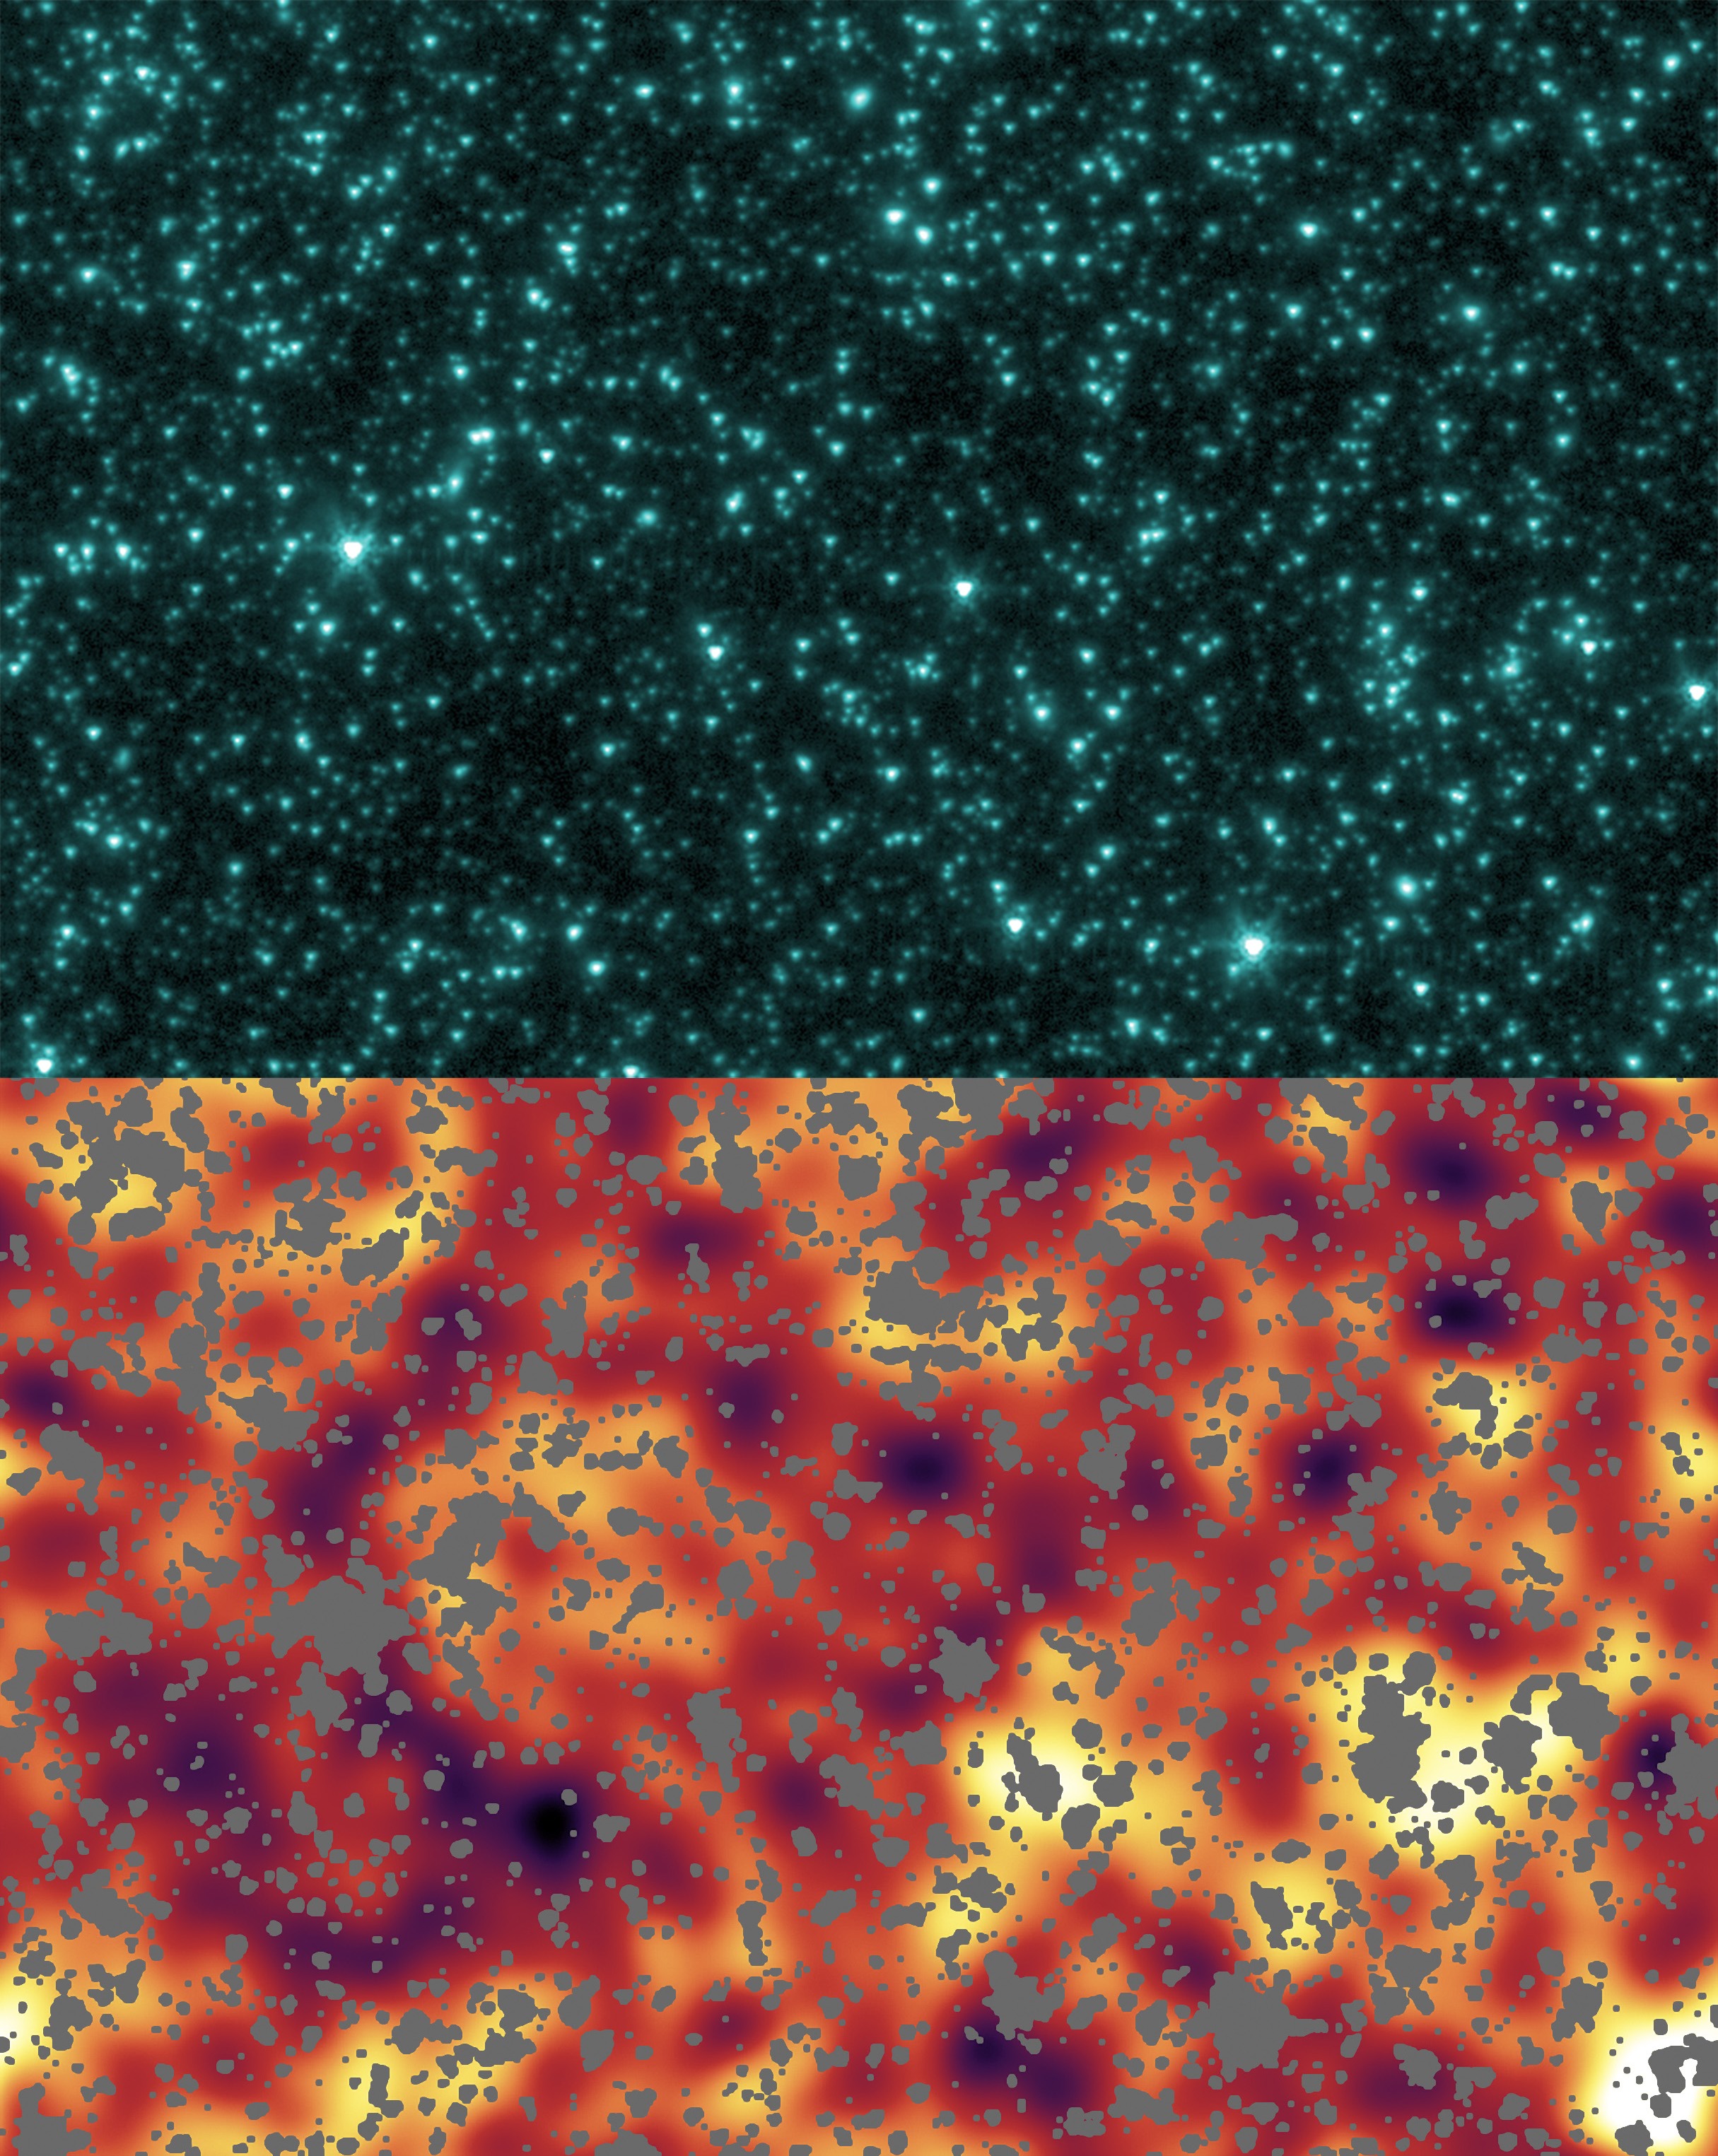 Hubble Deep Field by Spitzer